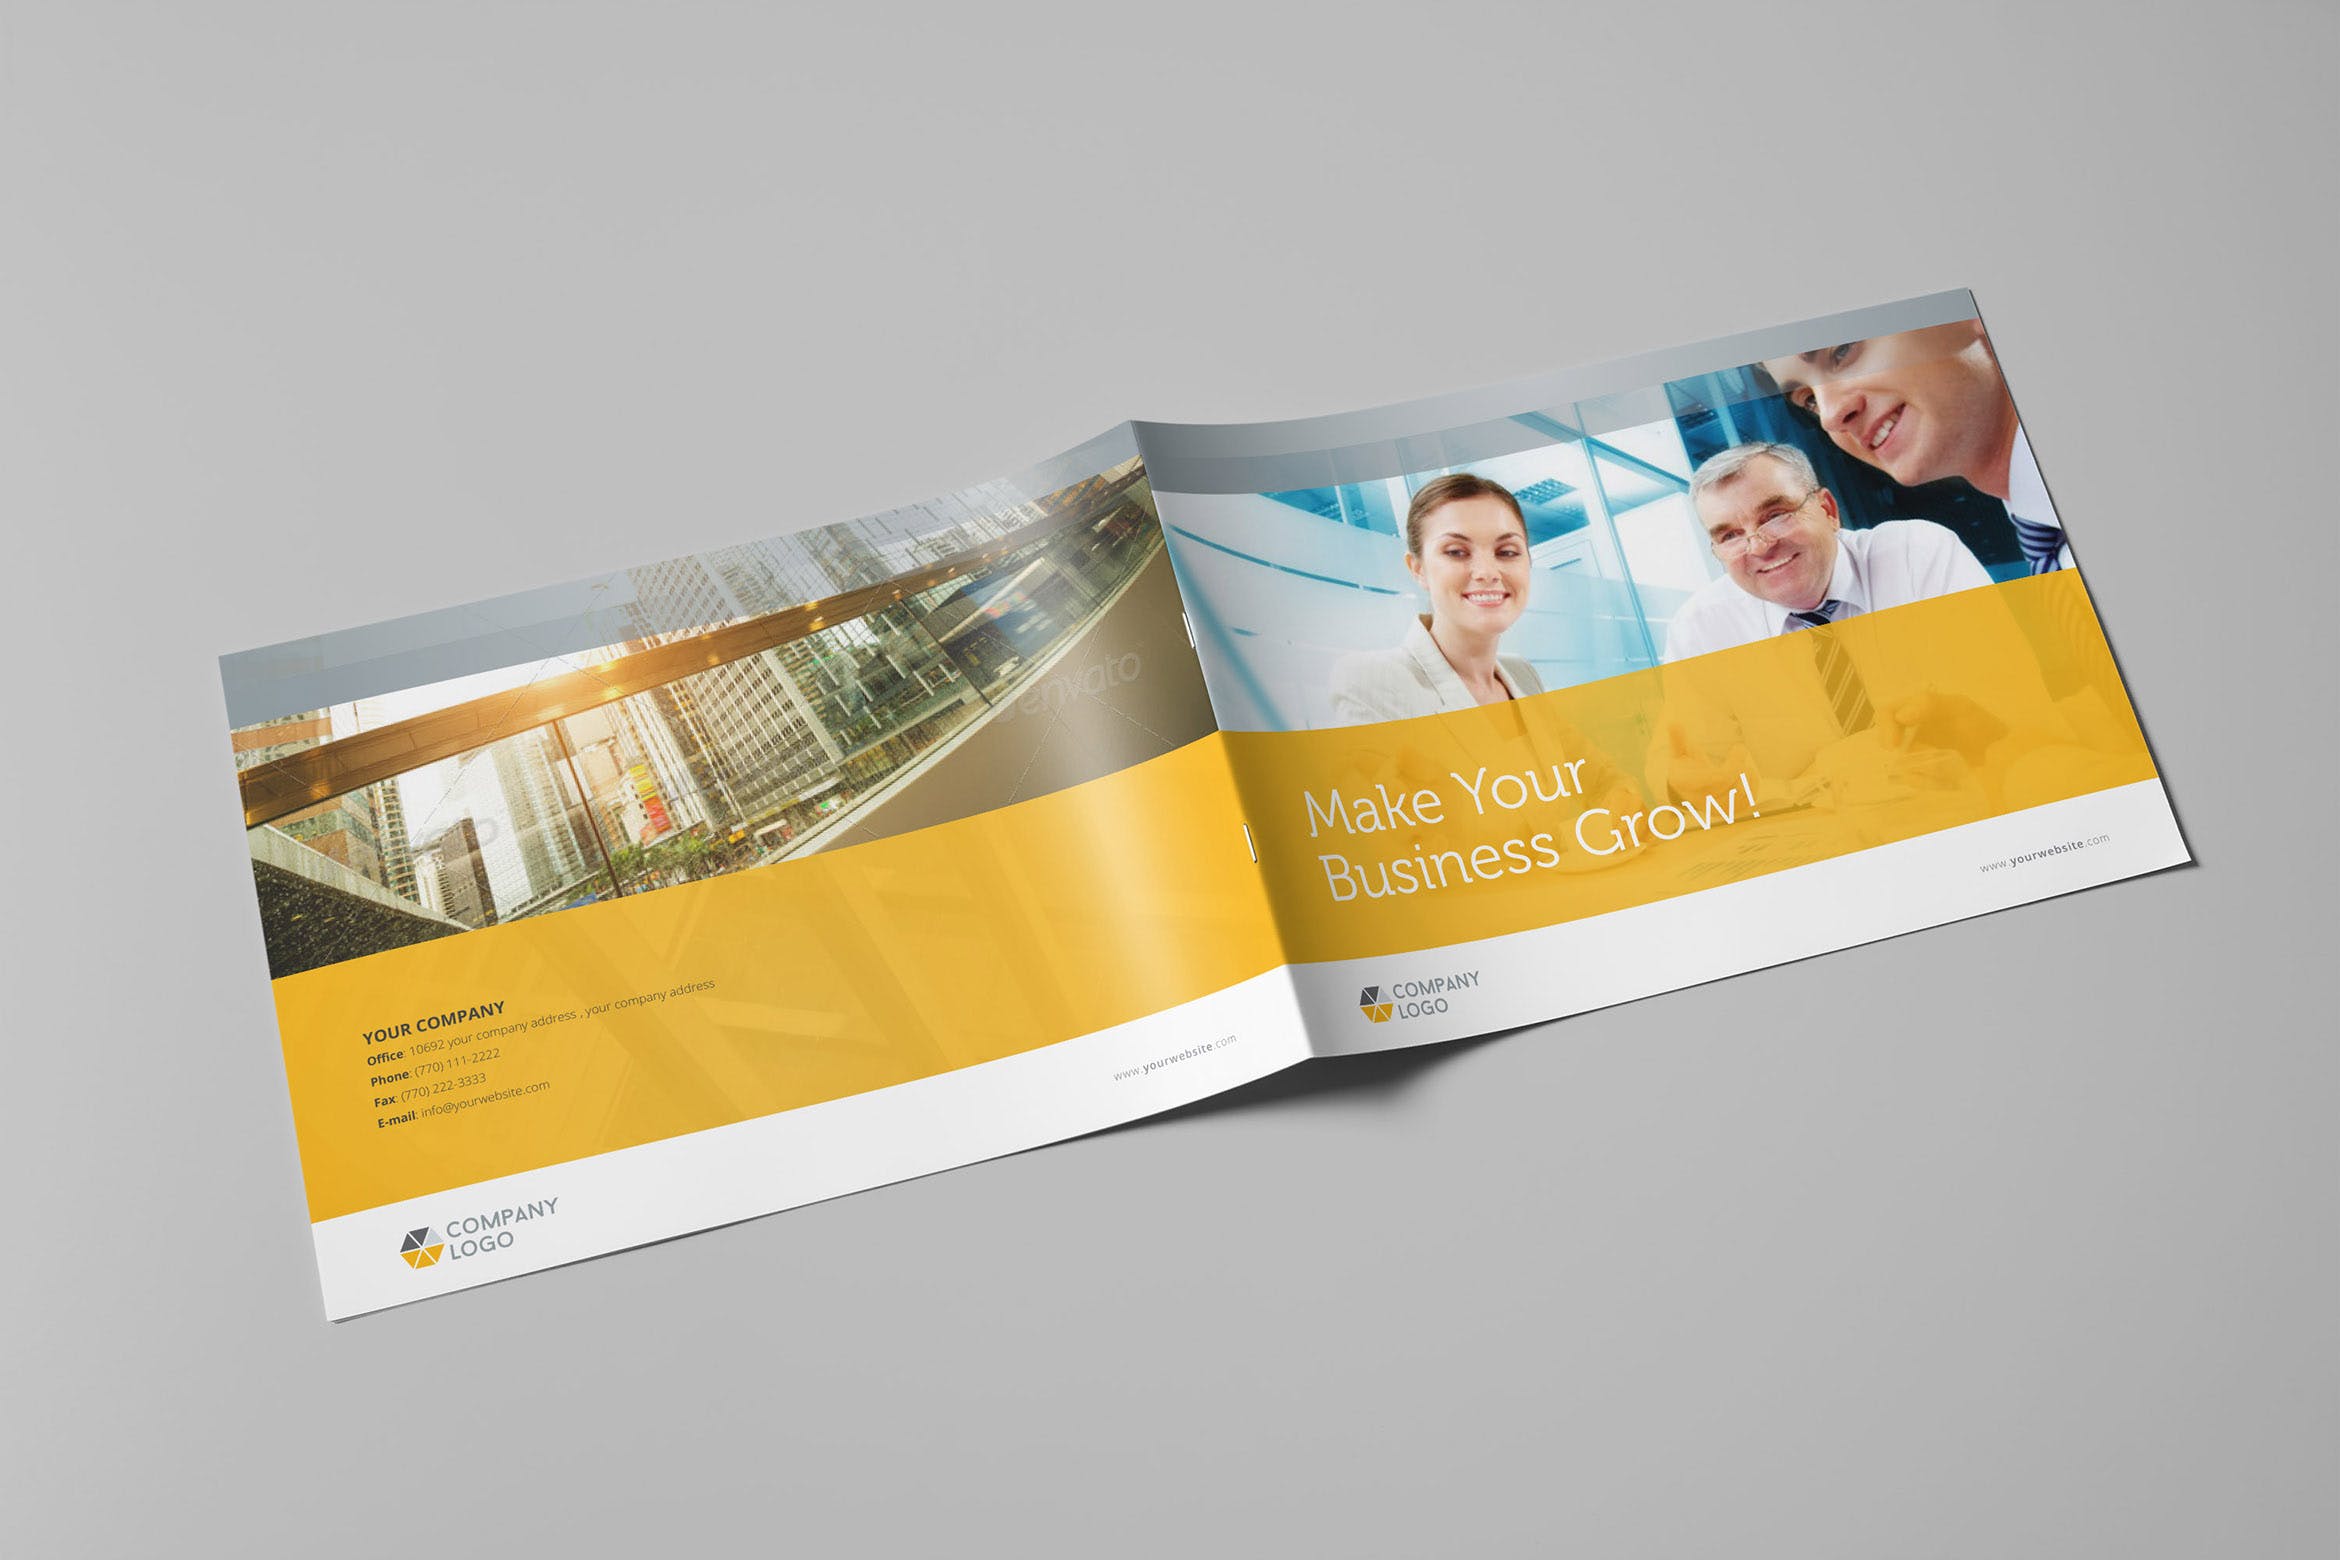 简约设计风格公司宣传画册版式设计模板 Clean Business Landscape Brochure插图